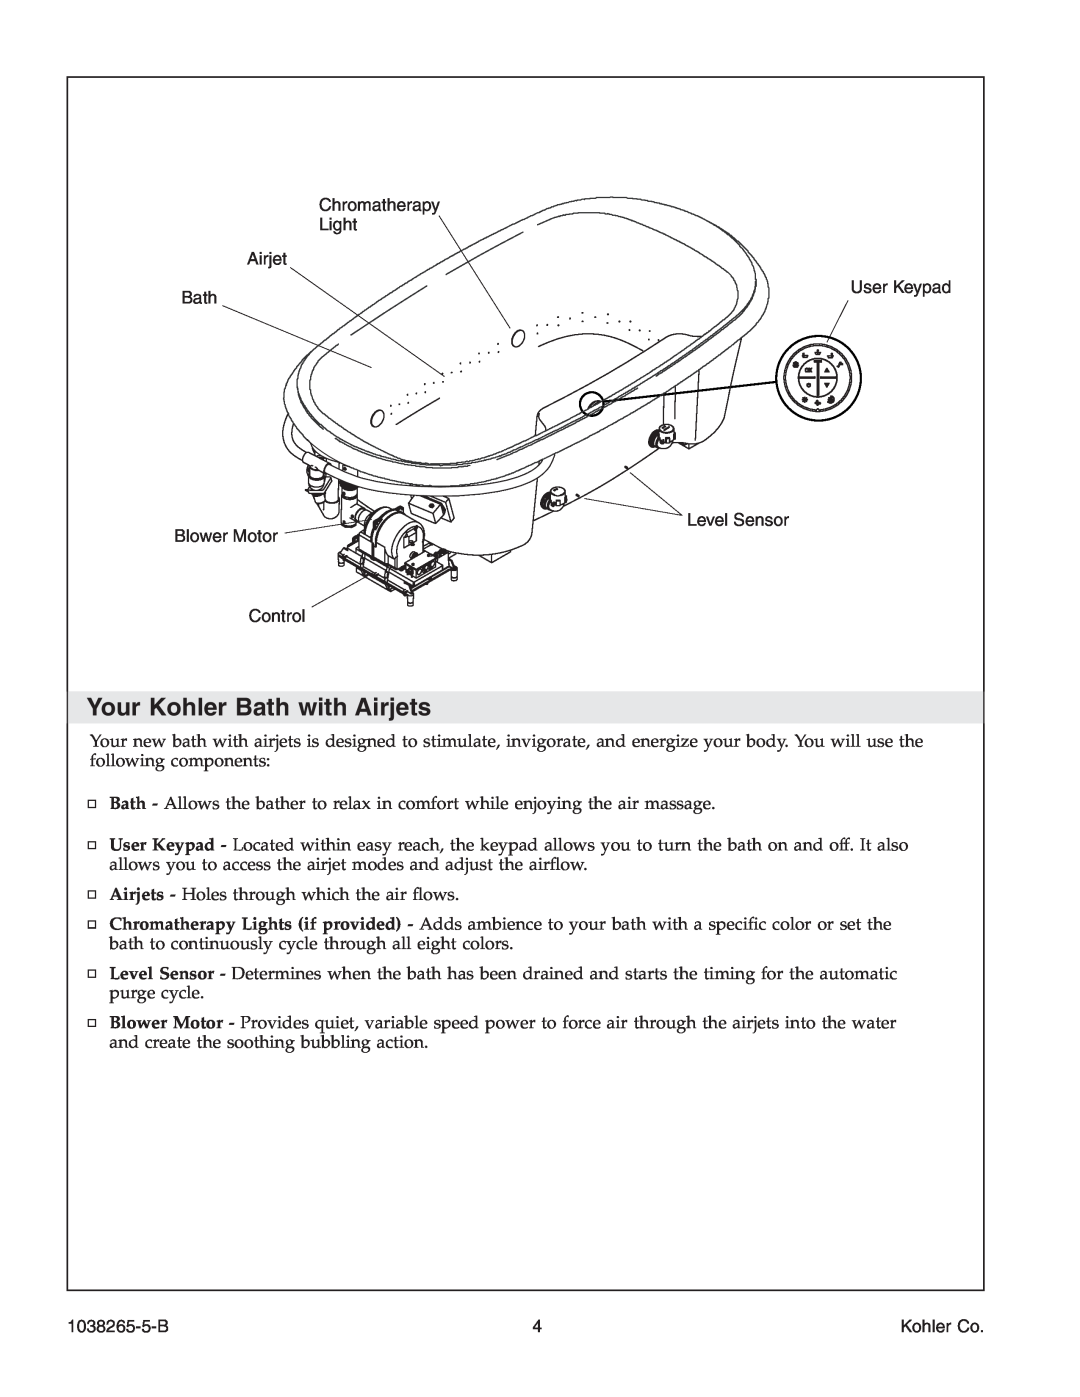 Kohler K-1375 Your Kohler Bath with Airjets, Chromatherapy Light Airjet, User Keypad, Level Sensor Blower Motor Control 